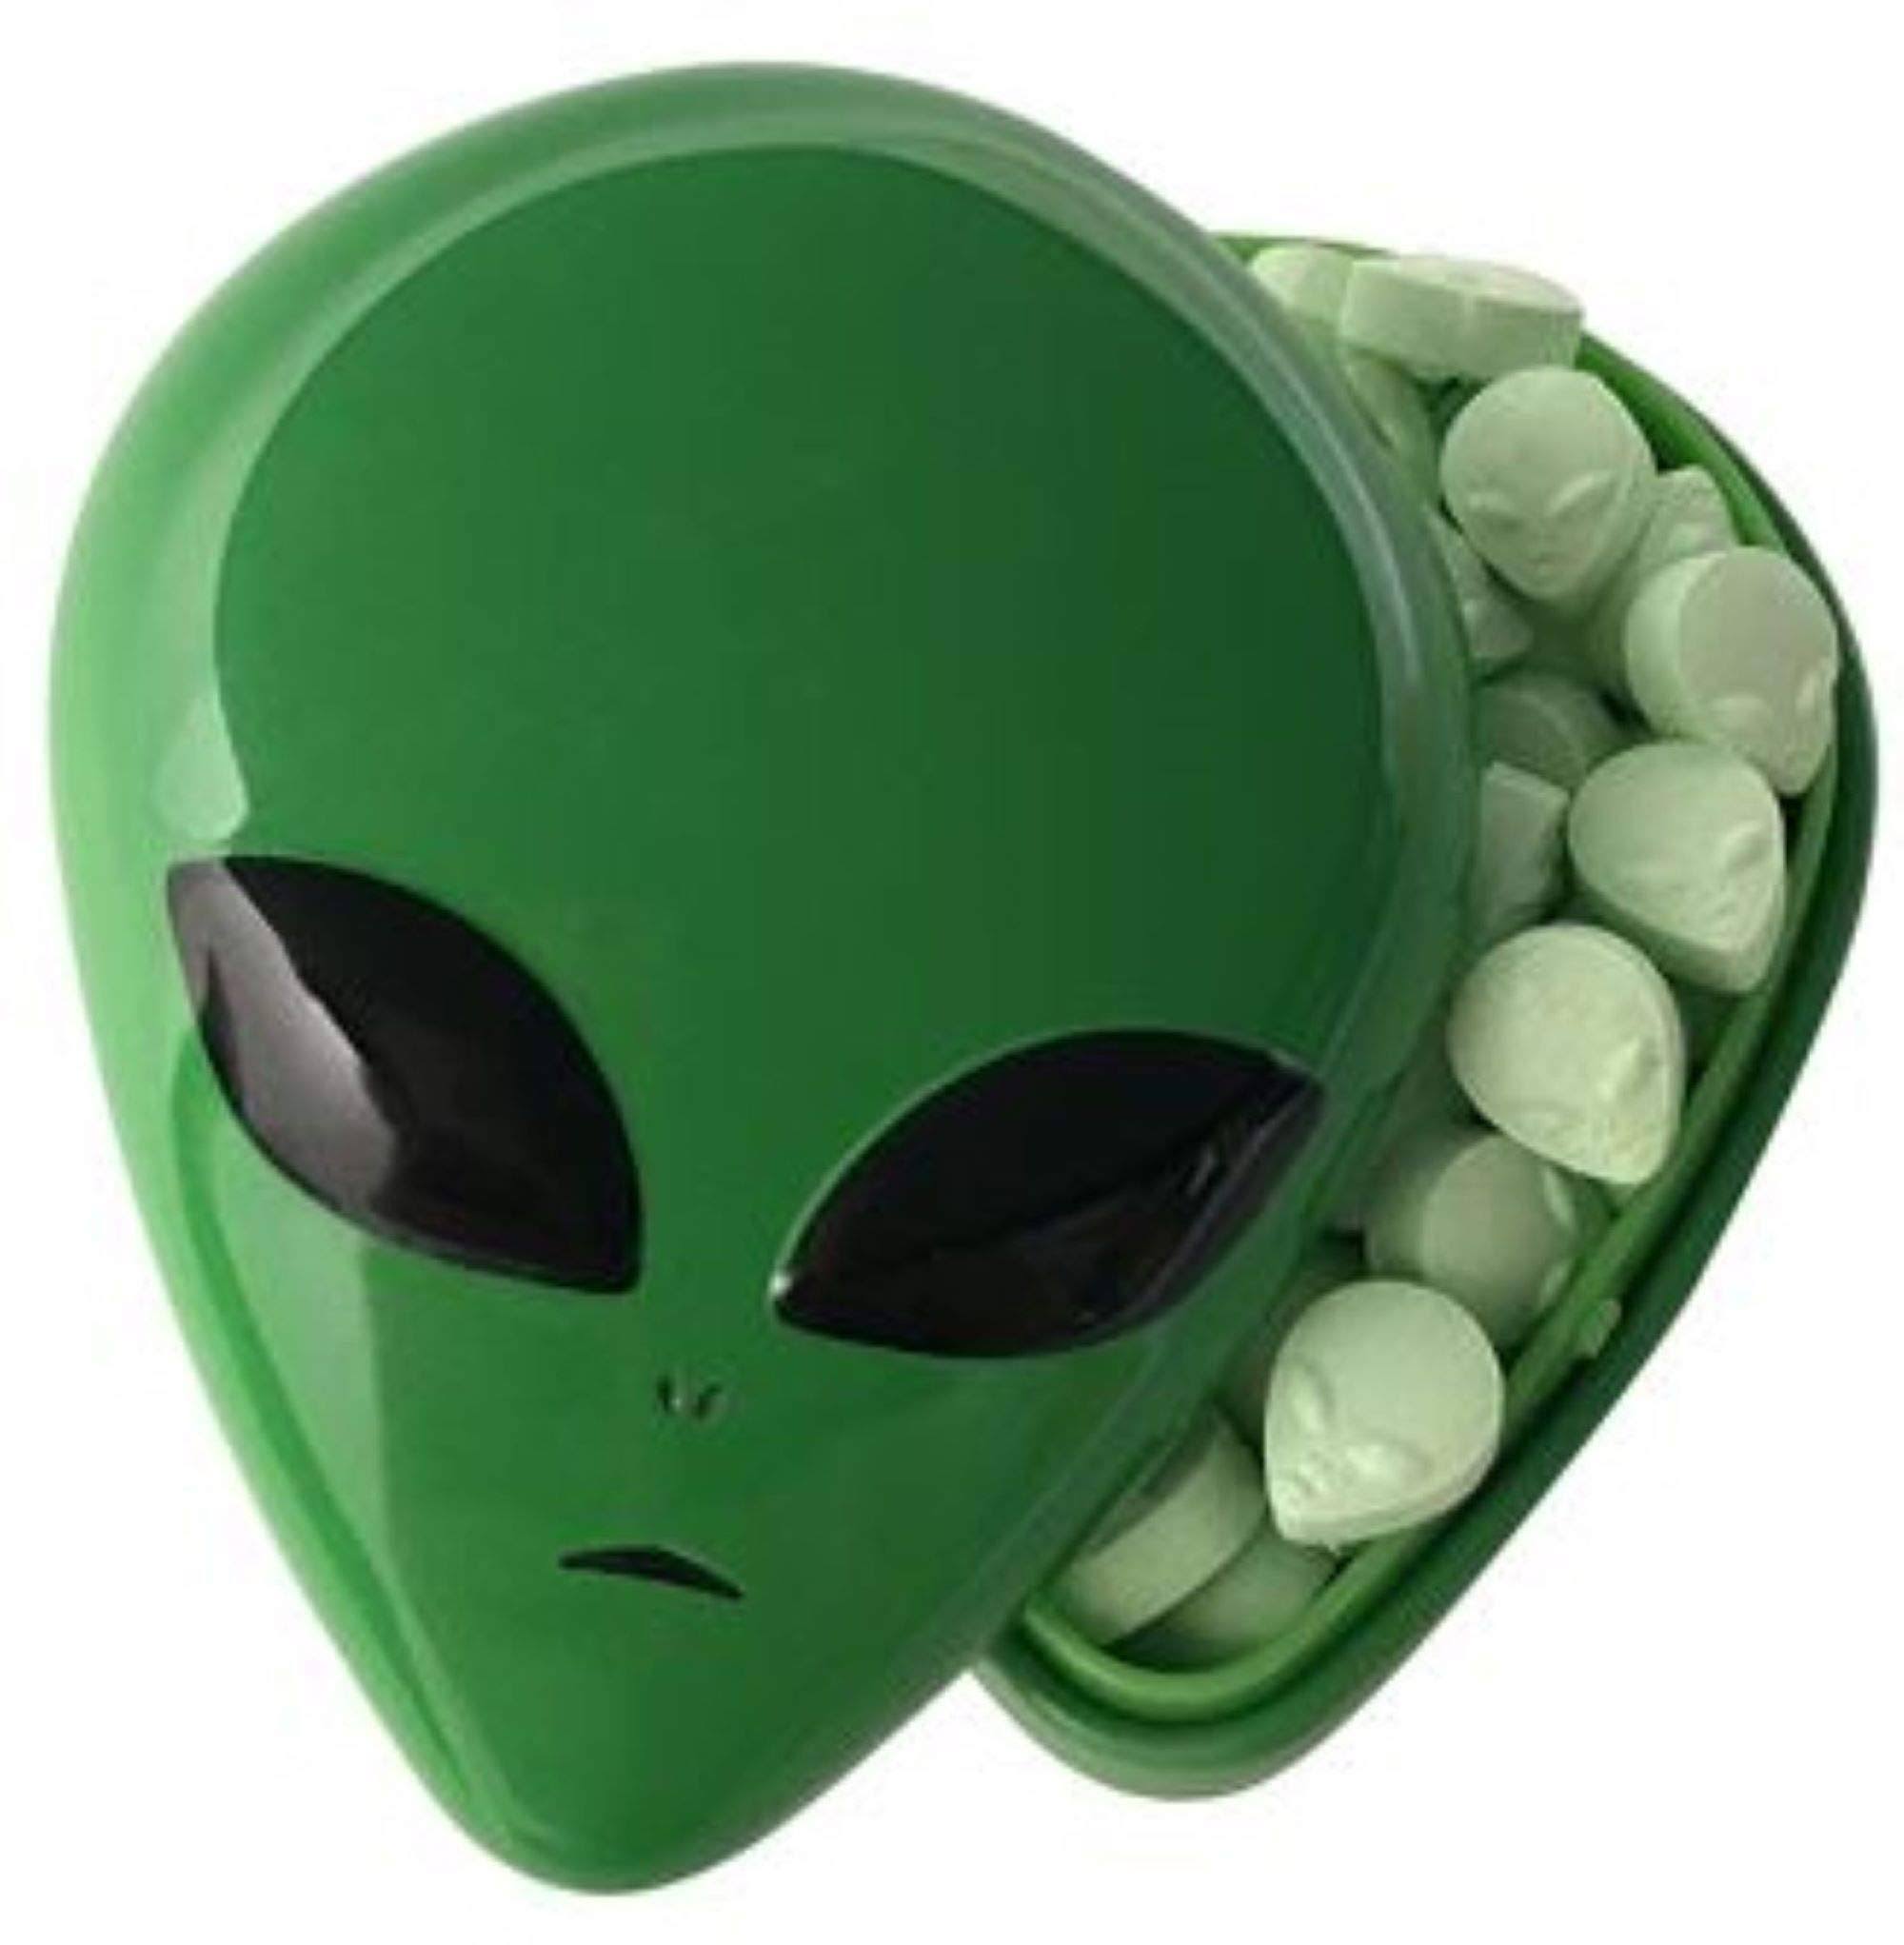 Alien Head Green Apple Sours Tin